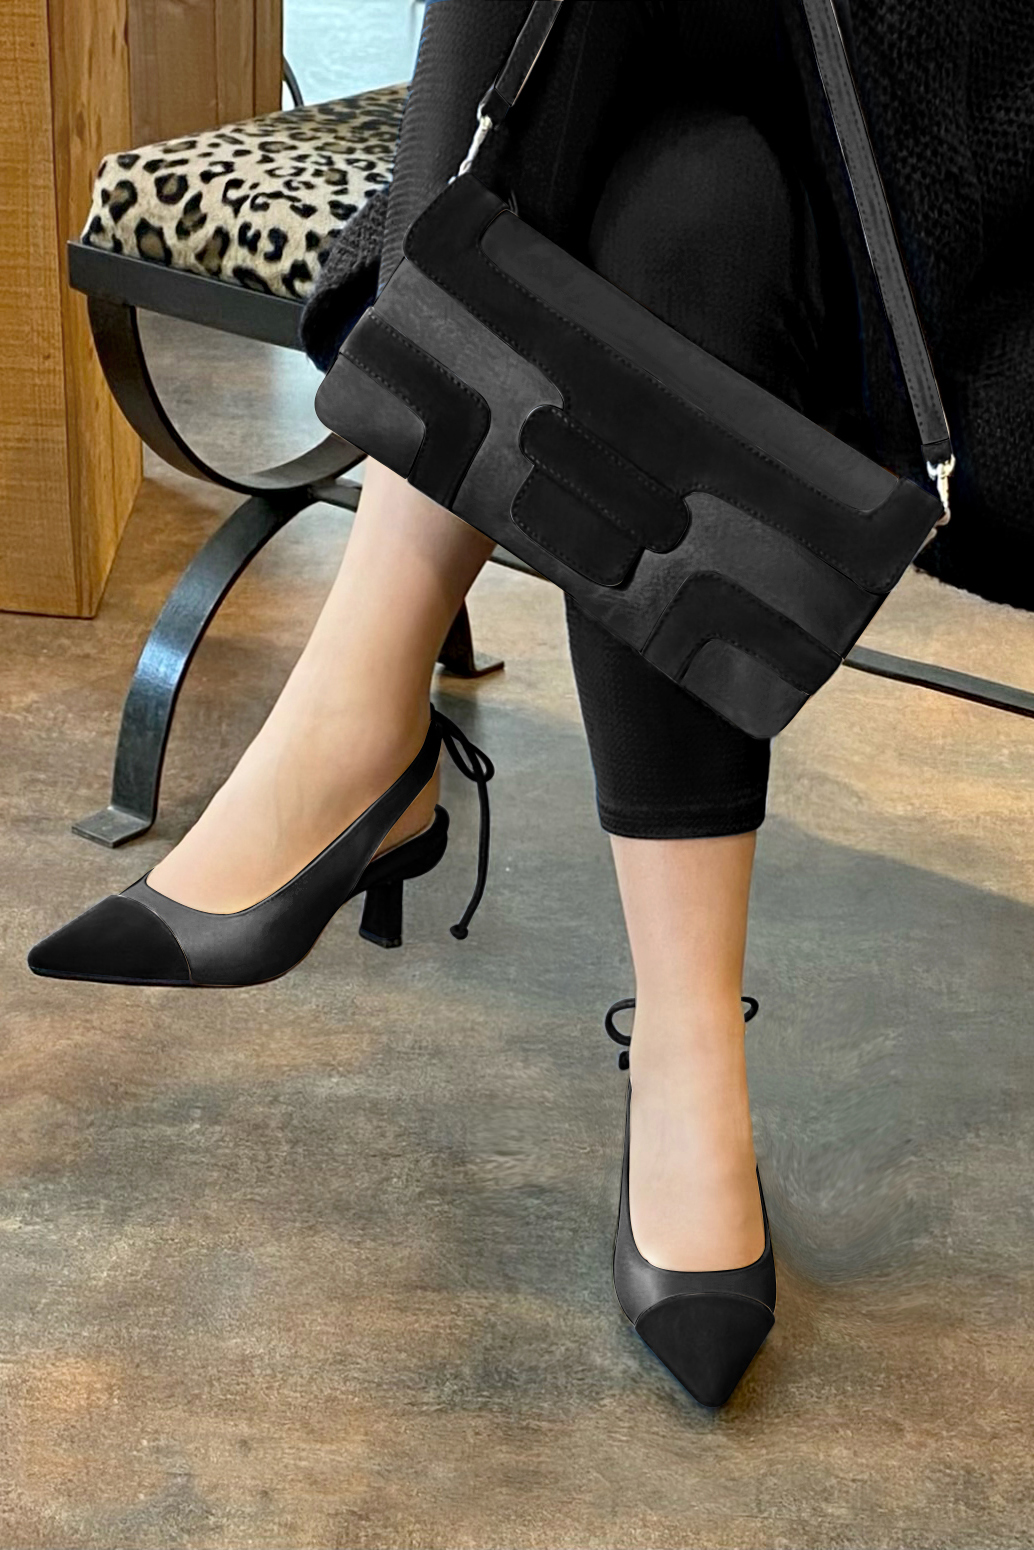 Chaussure femme à brides :  couleur noir mat. Bout pointu. Talon mi-haut bobine. Vue porté - Florence KOOIJMAN